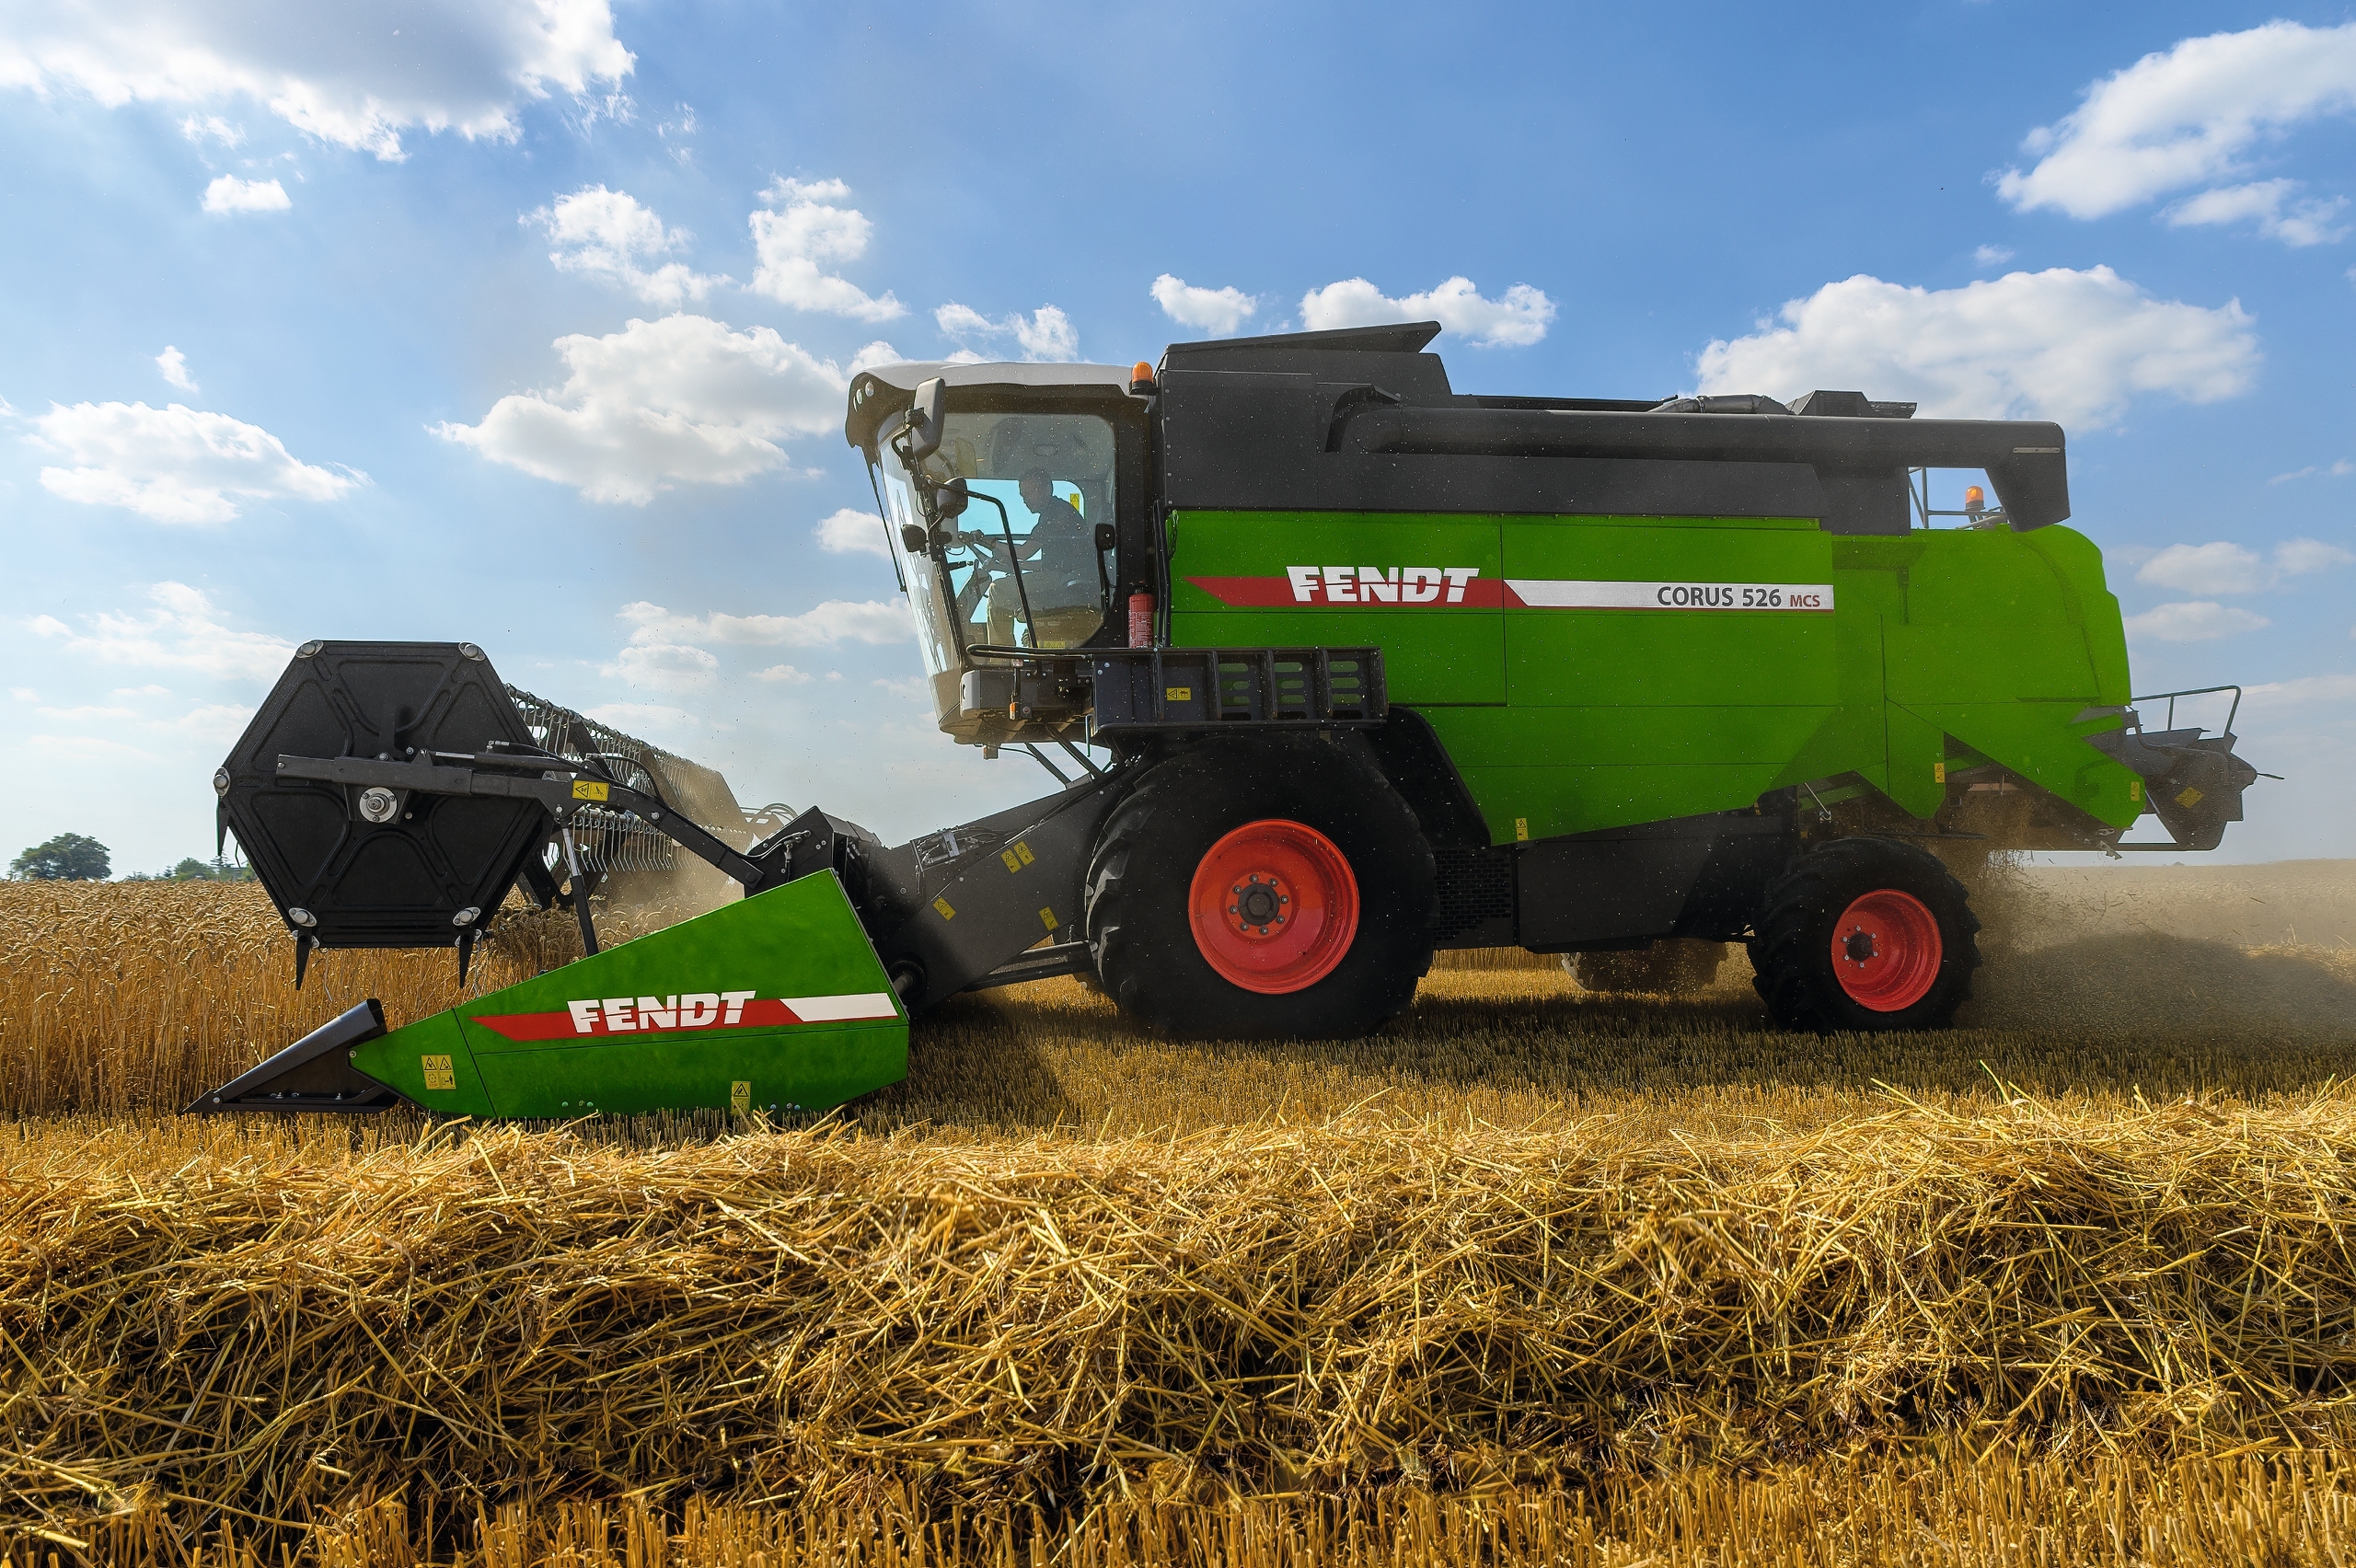 New series of Fendt straw walker combine harvesters - Aug. 26, 2022